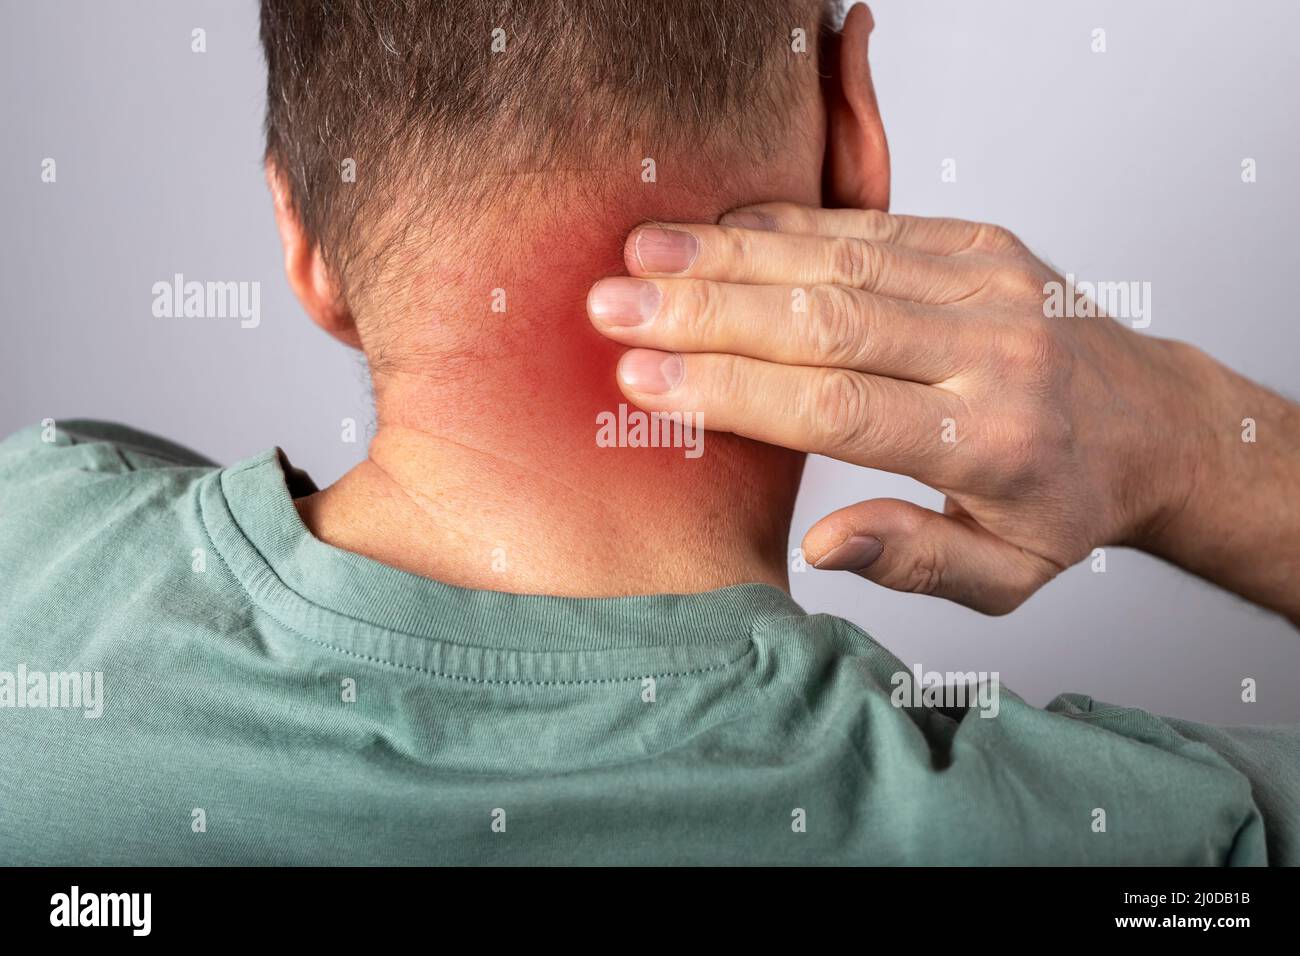 Mann, der an Nackenschmerzen leidet. Kopf zurück mit roten Punkt Nahaufnahme. Gesundheitsprobleme und Medizinkonzept. Hochwertige Fotos Stockfoto